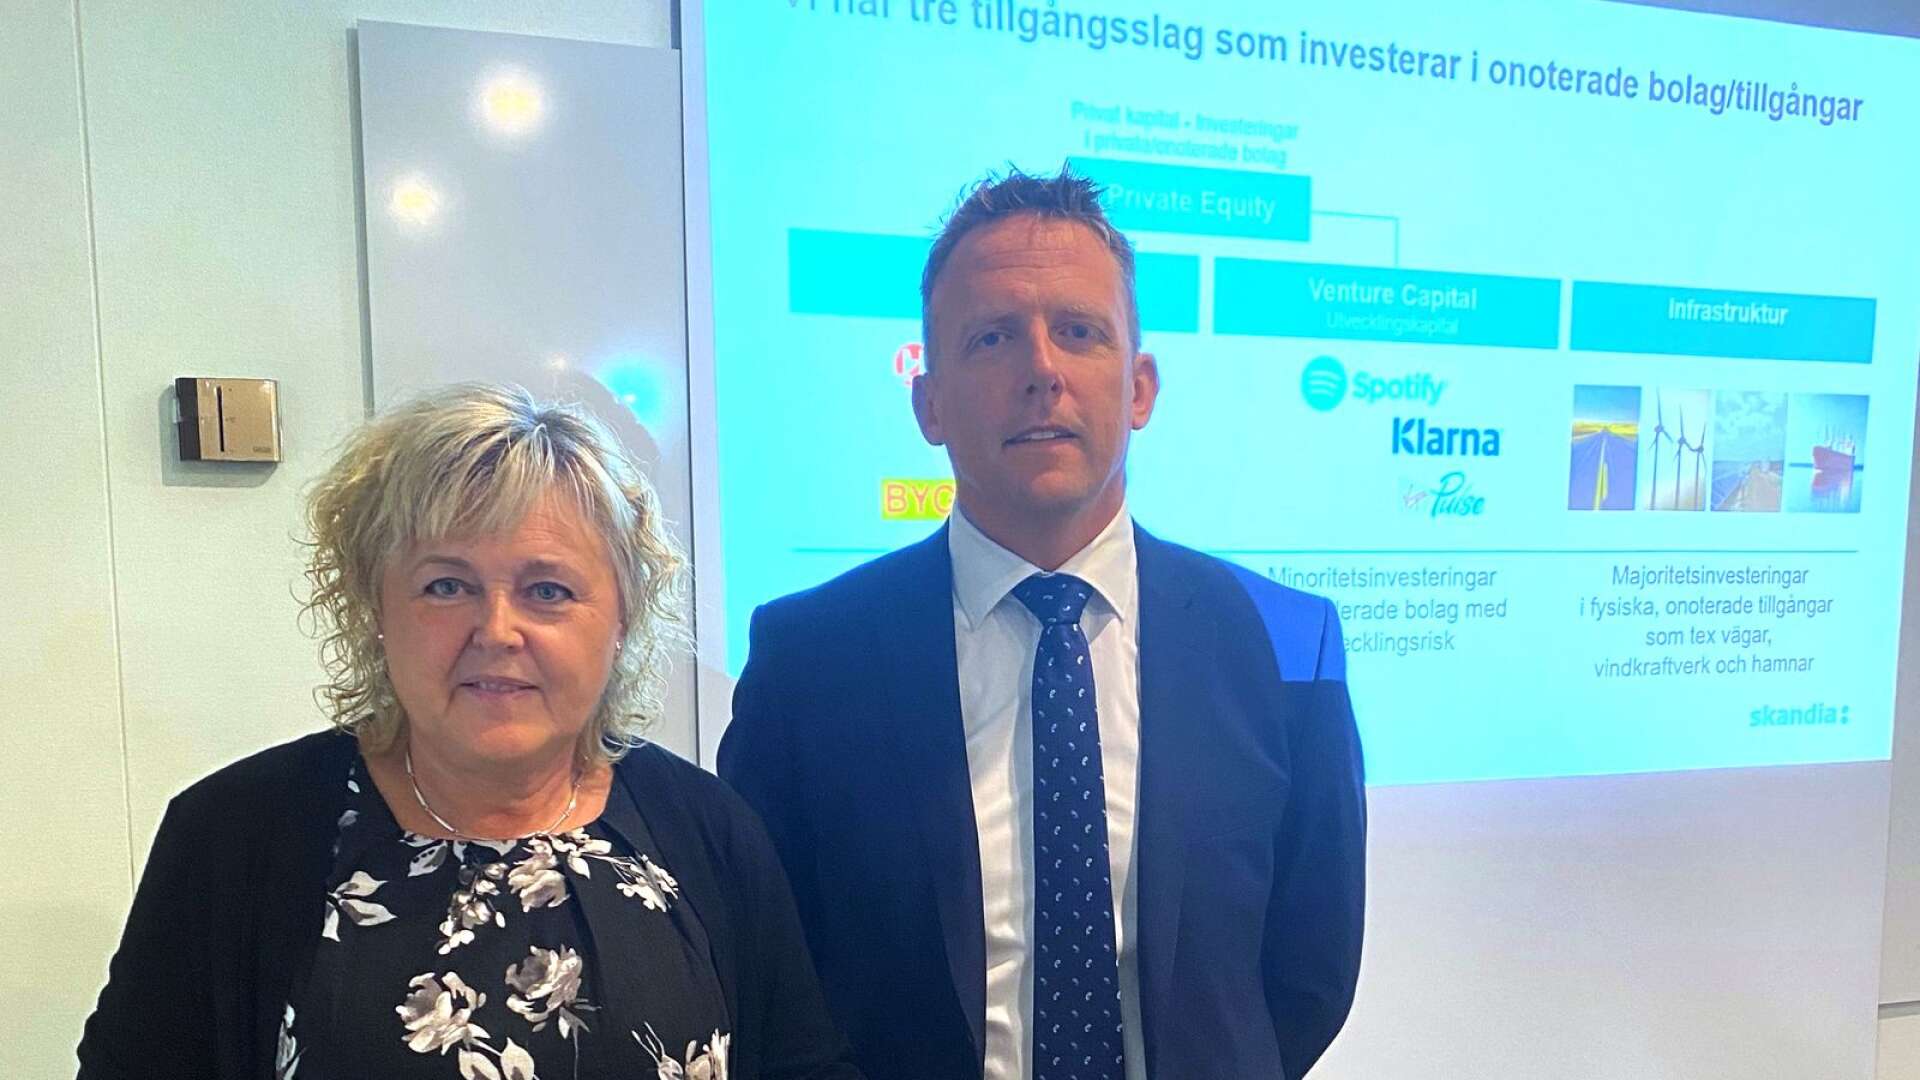 Hittills i år har våra kunder i Värmland fått dela på 695 miljoner kronor, säger Ewa Pettersson och Claes Tarander, rådgivare i Skandia Värmland.